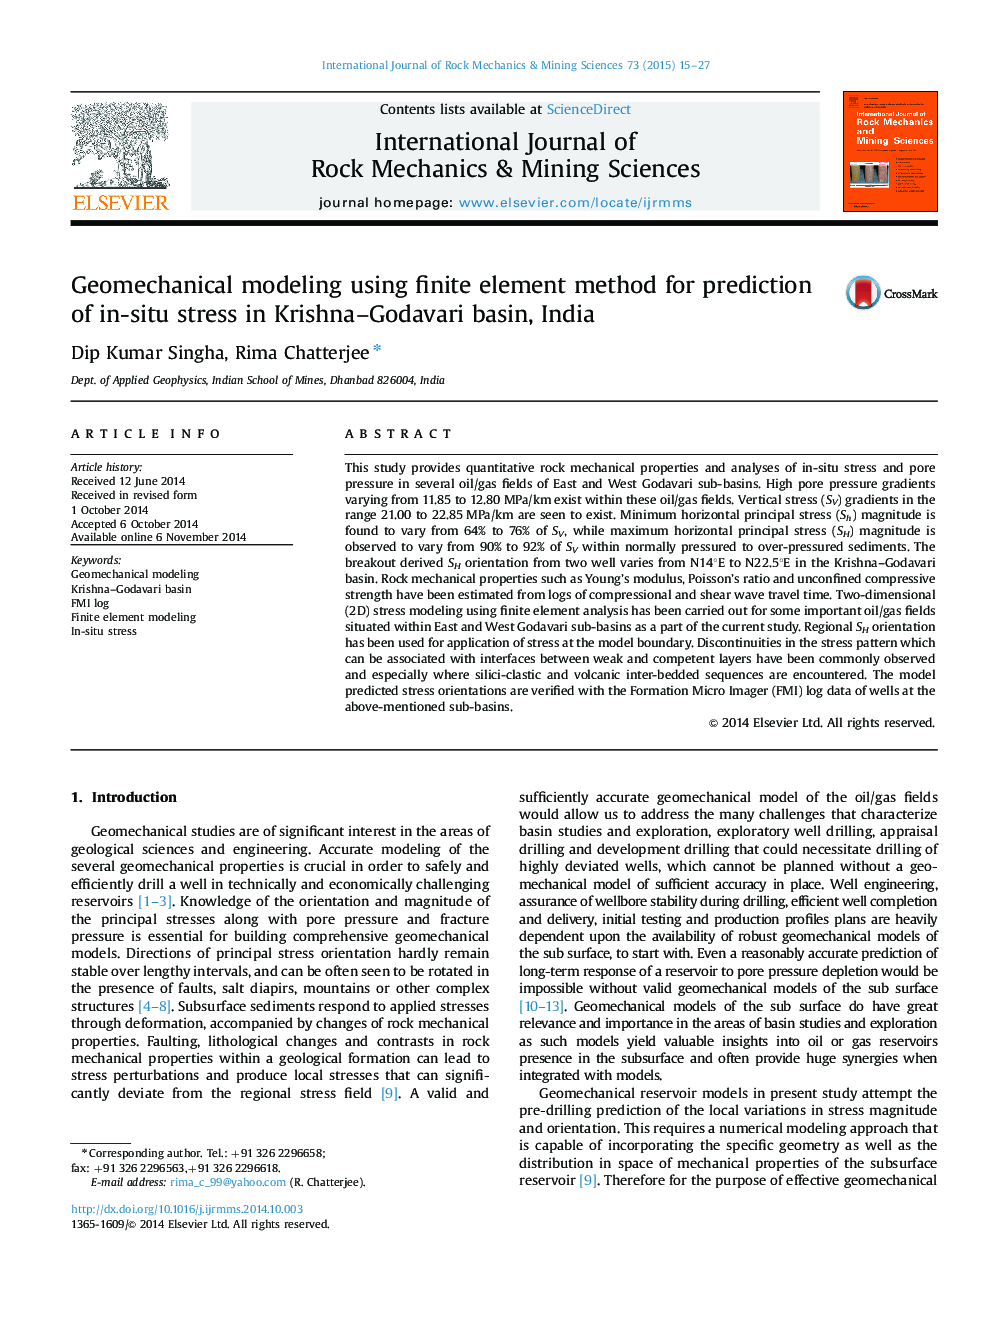 مدل سازی ژئومکانیک با استفاده از روش عنصر محدود برای پیش بینی استرس در ناحیه کریشنا، حوضه گدارواری، هند 